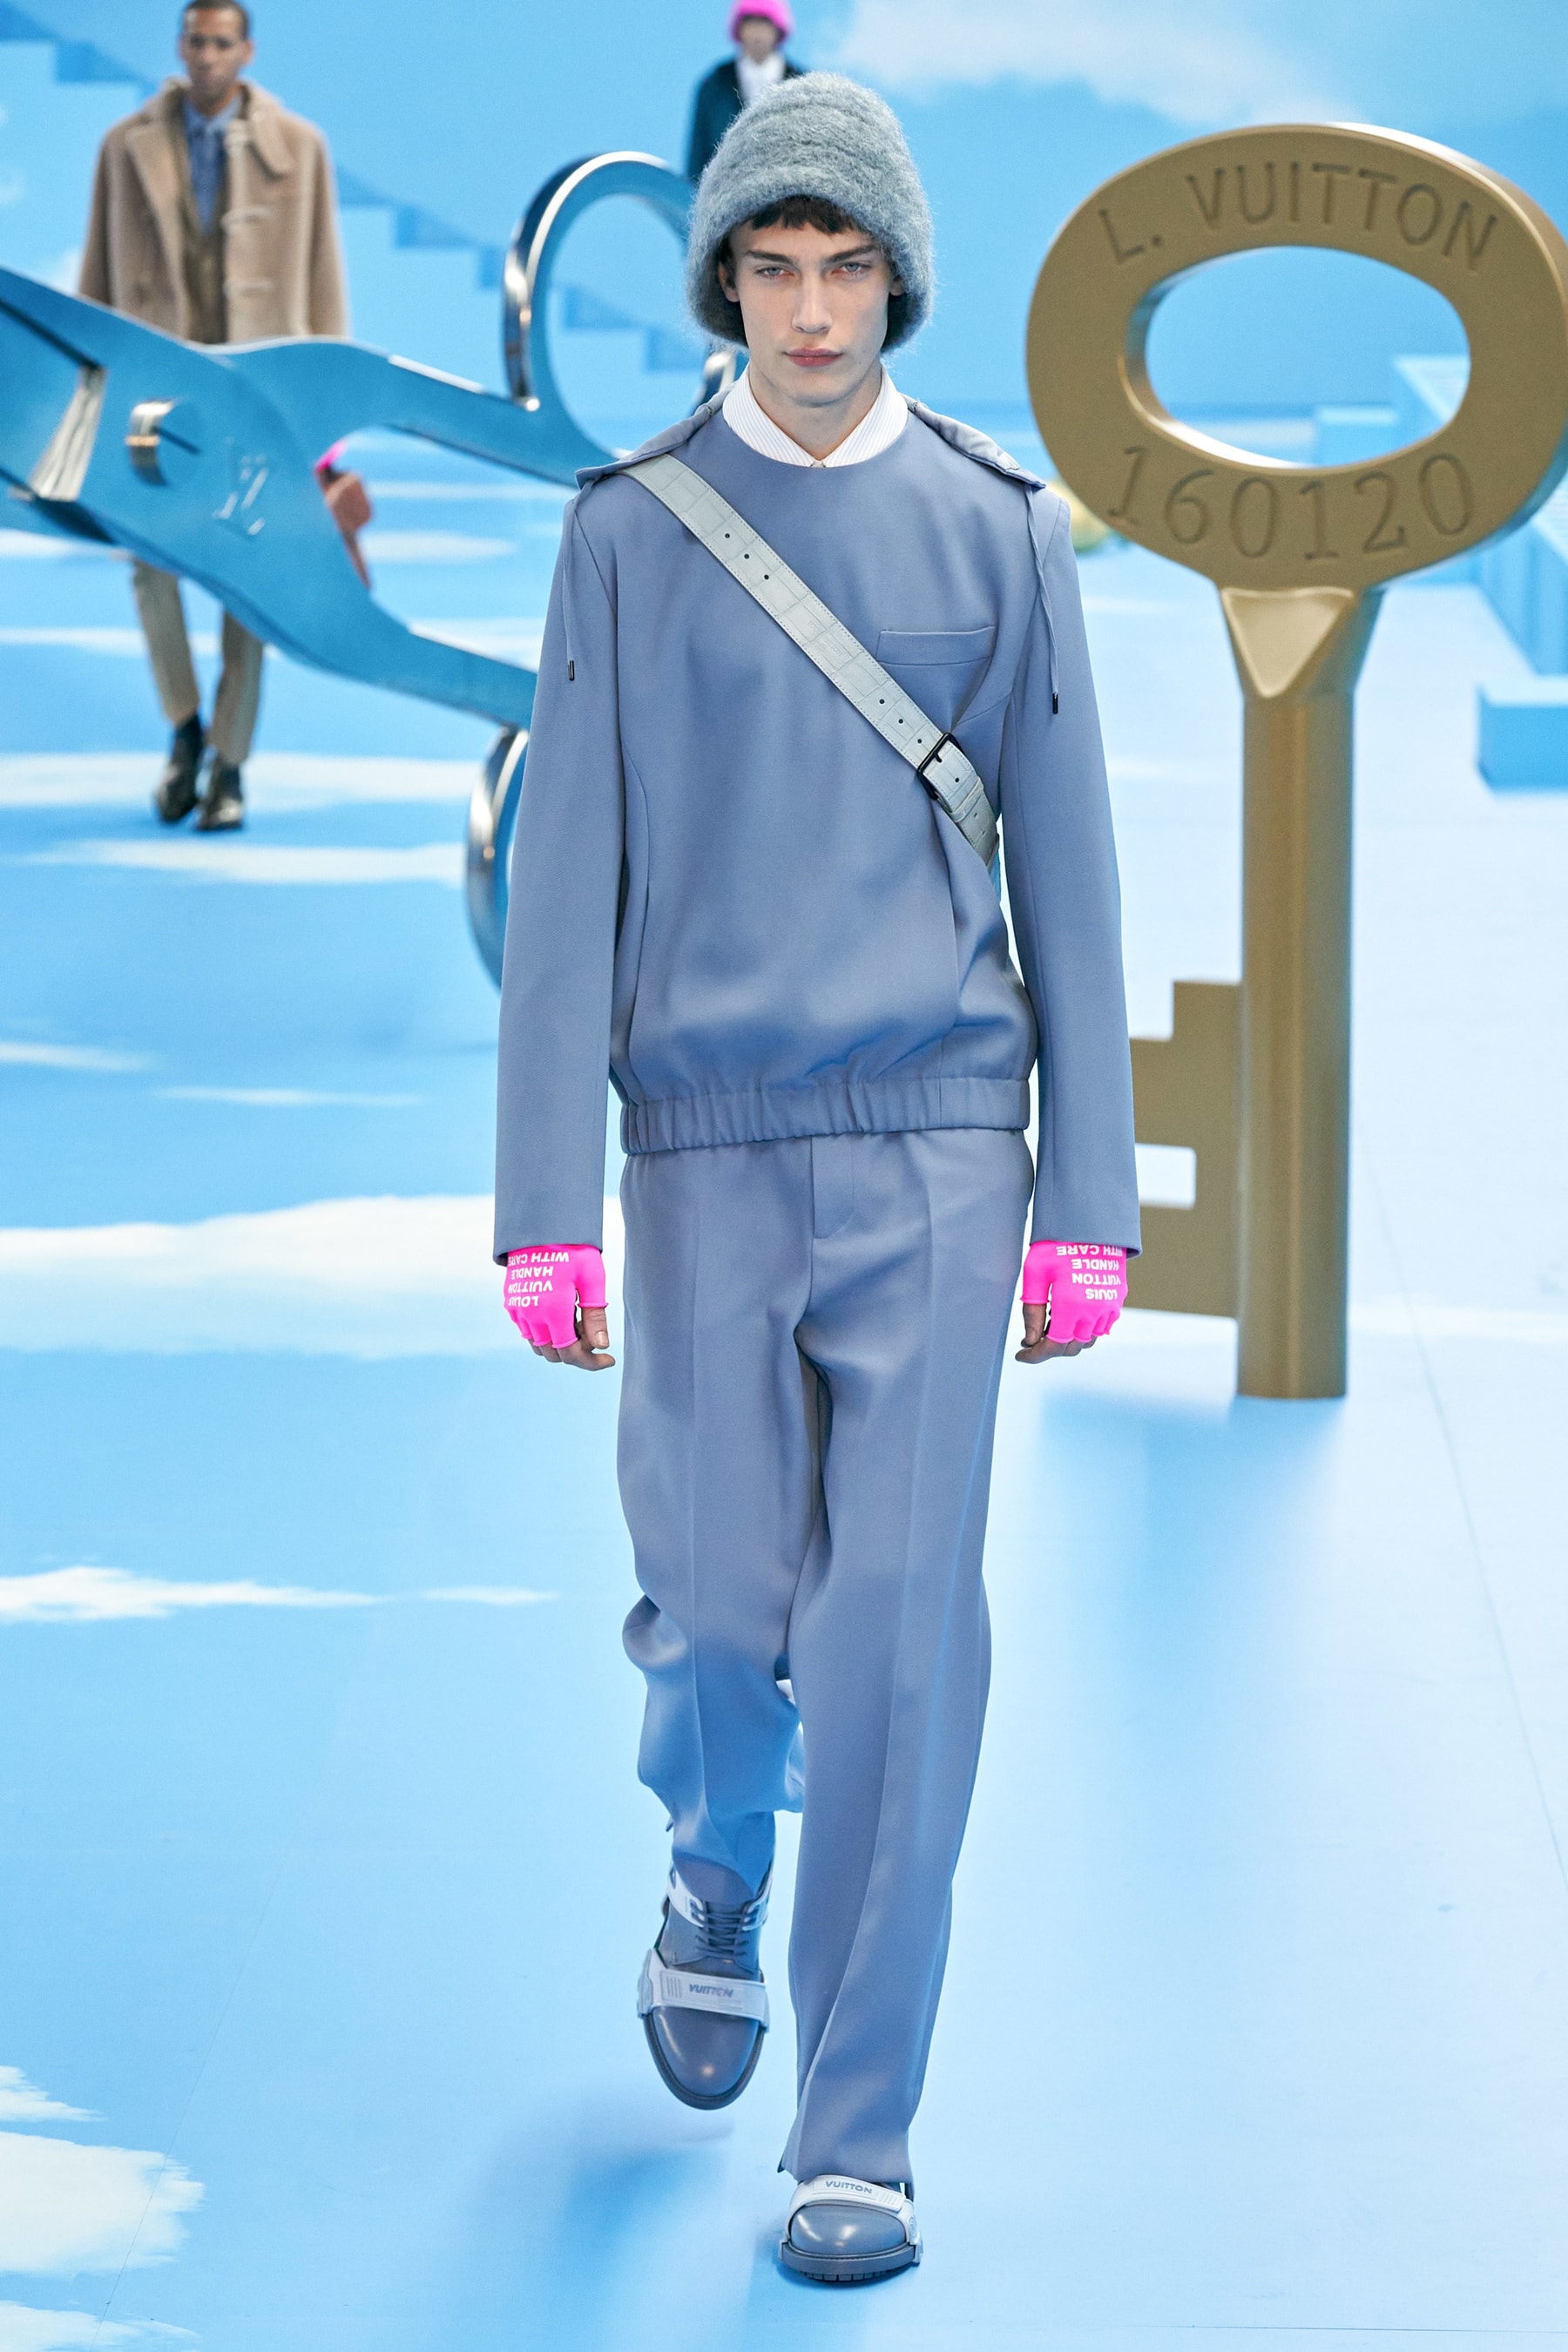 ルイ・ヴィトン 2020年秋冬コレクション Louis Vuitton fw20 Paris Fashion Week Runway Show mens fall winter 2020 virgil abloh